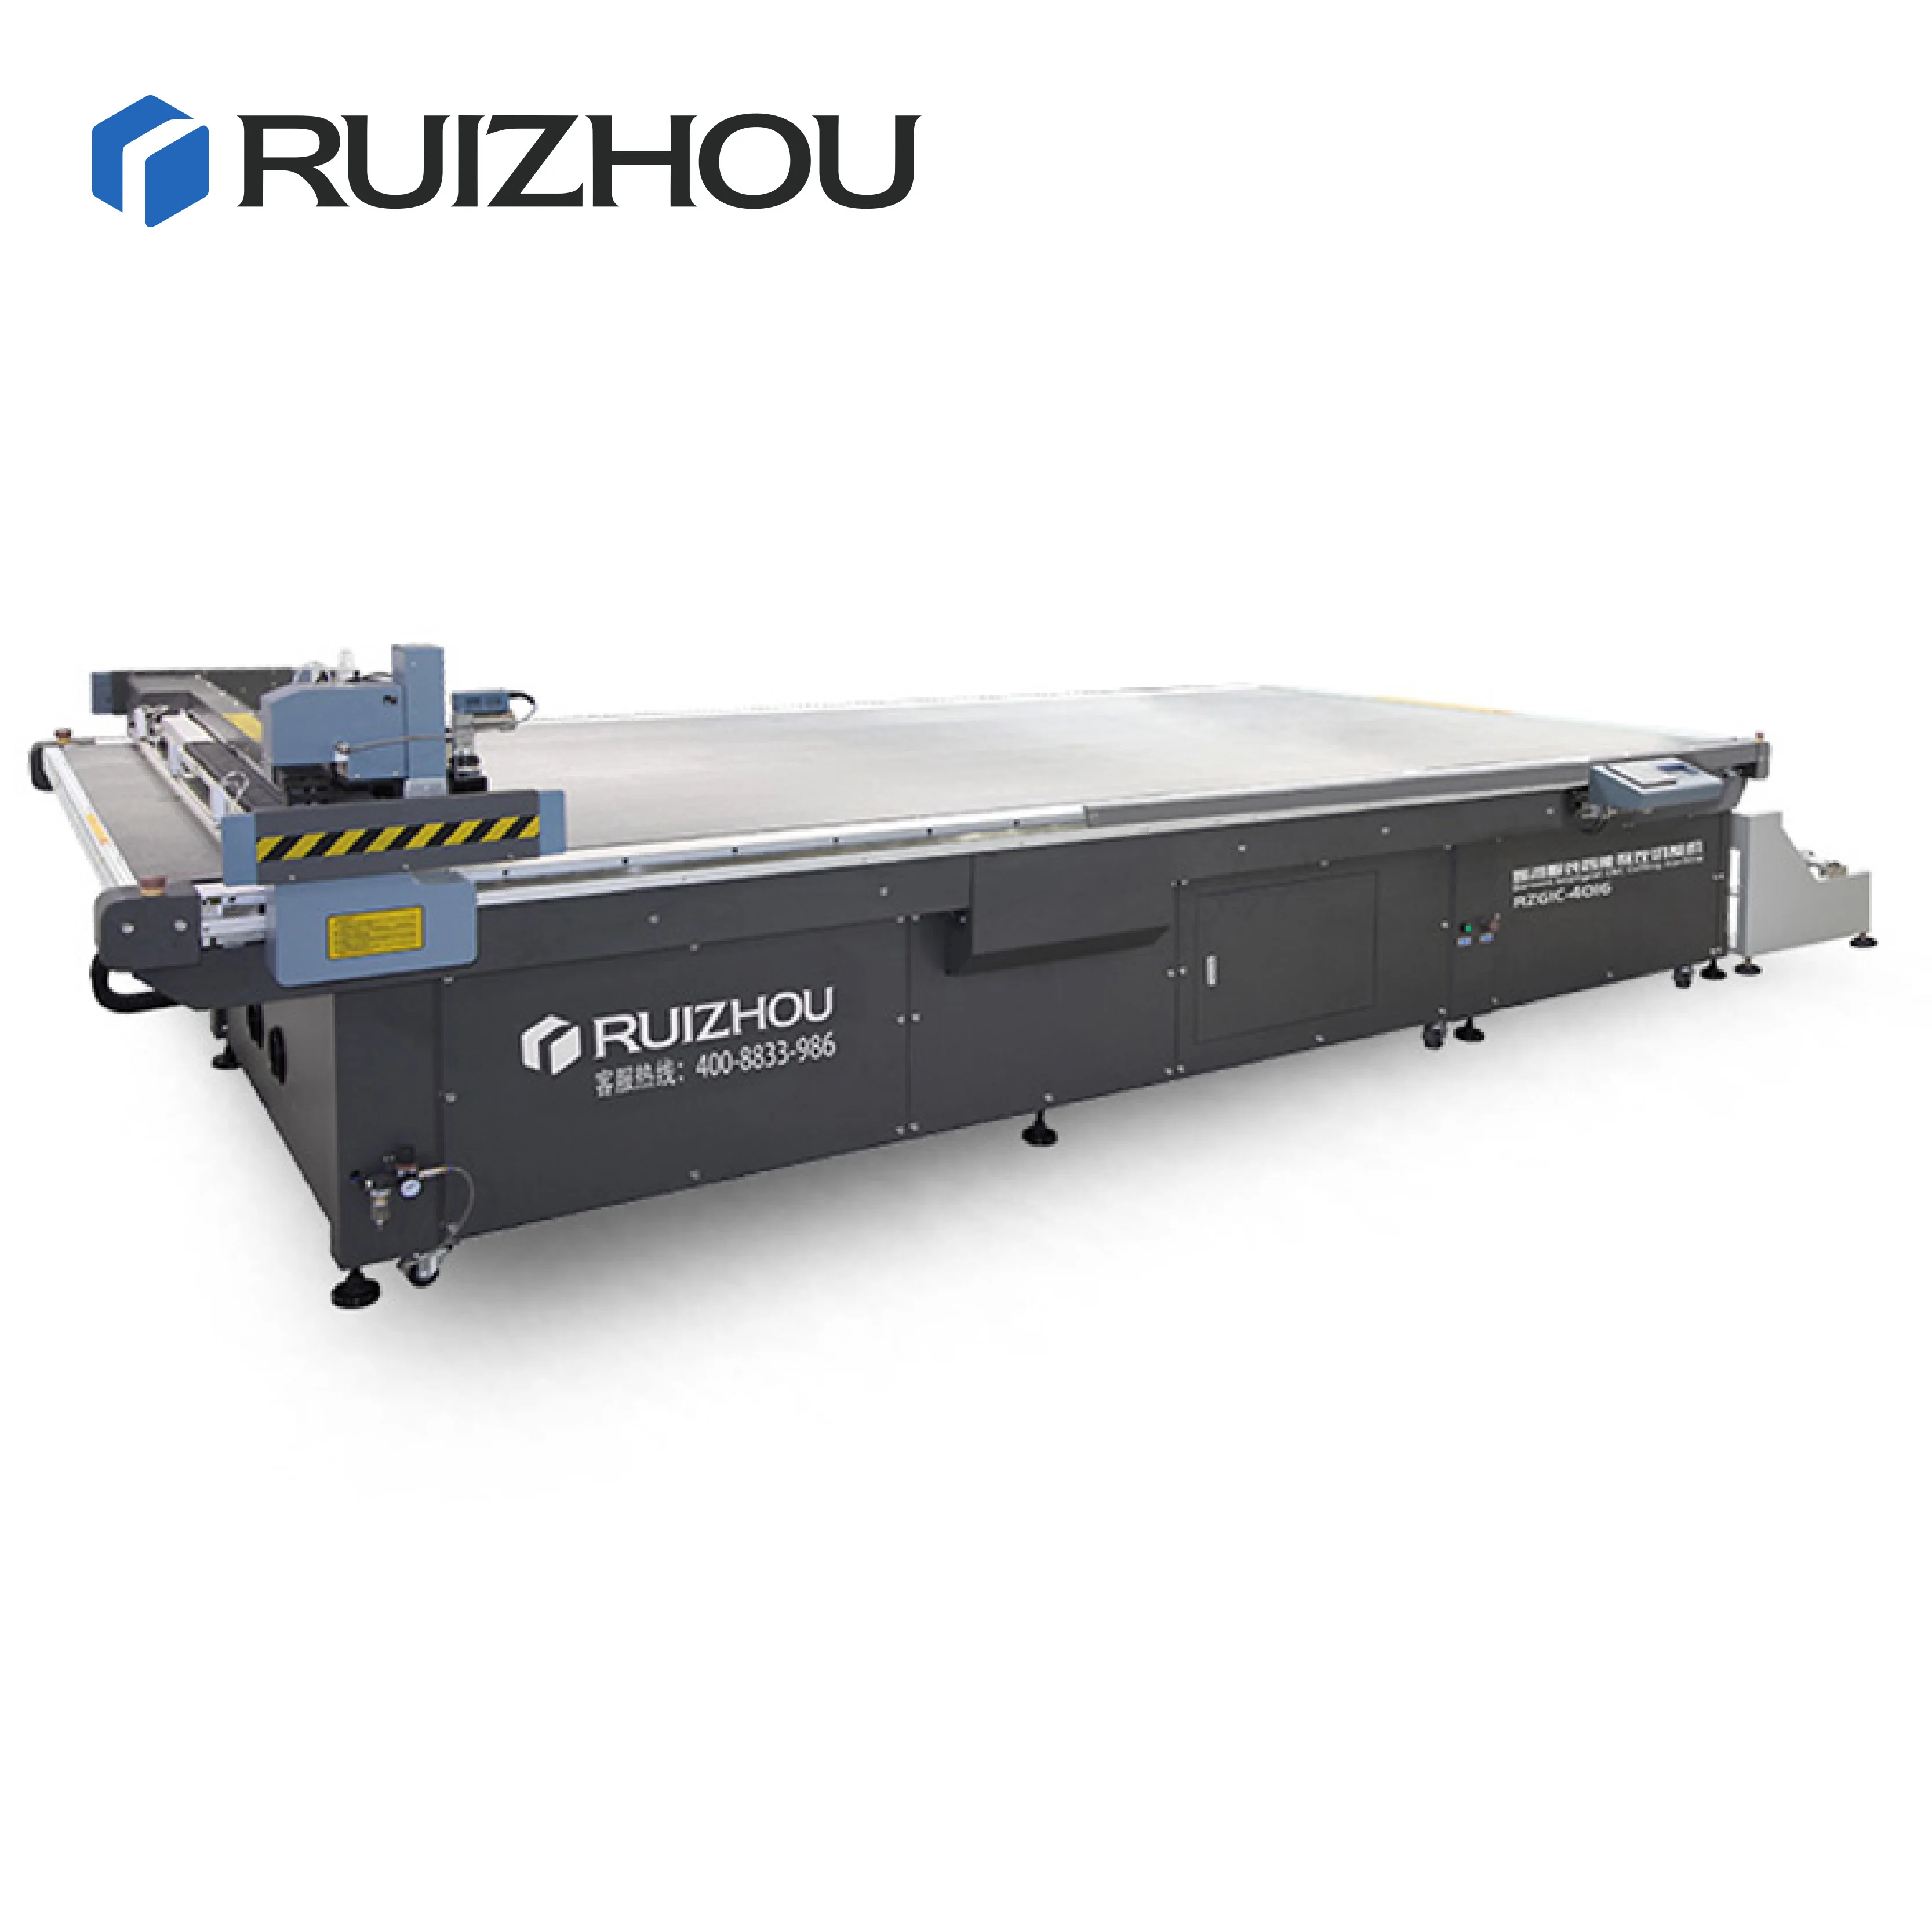 RUIZHOU Apparel Textile Cutting Machine hot sales RZGIC-6009E